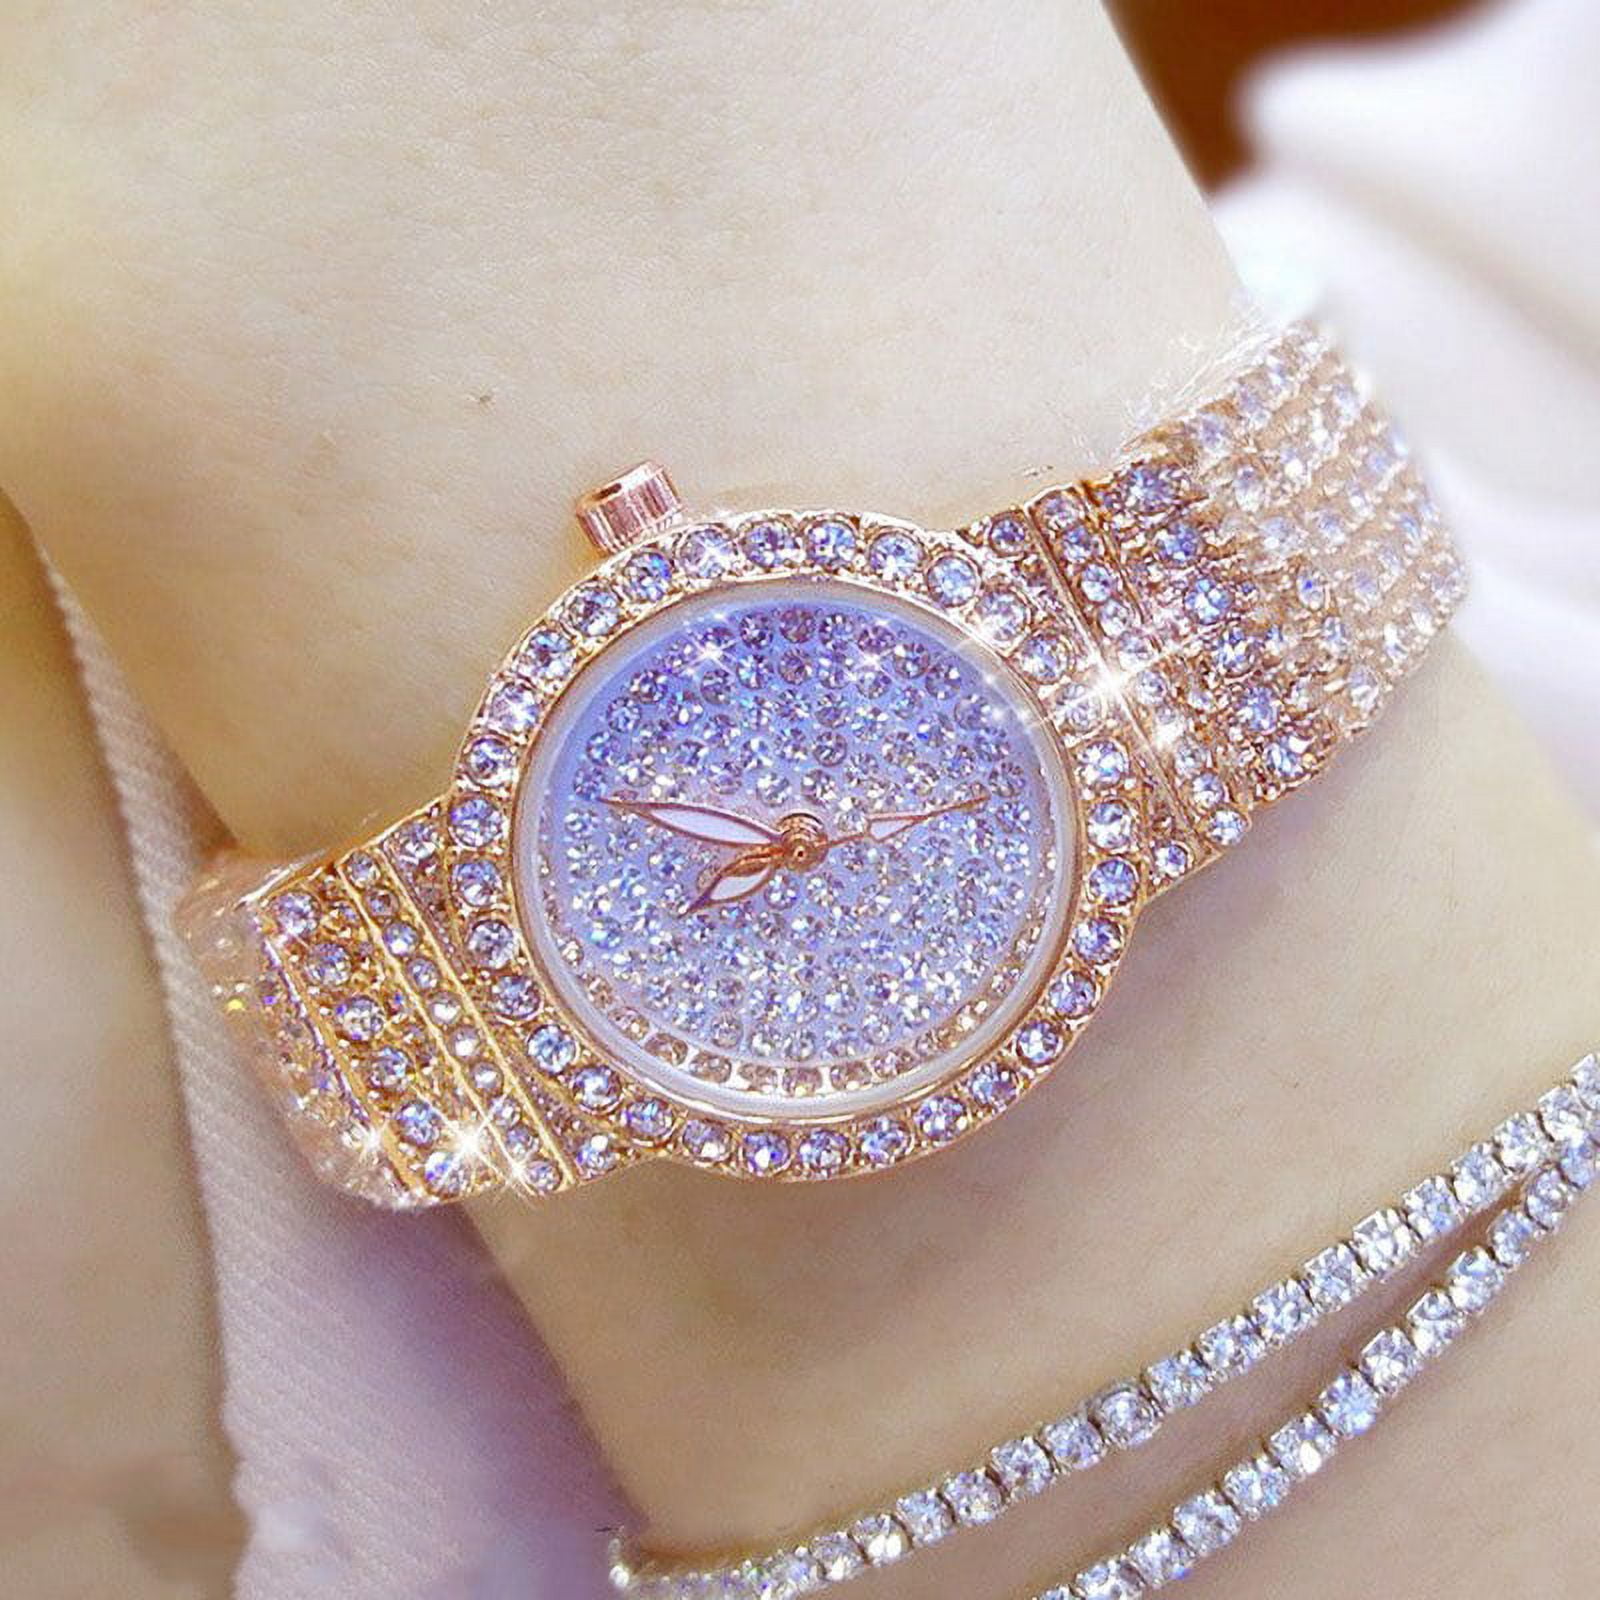 Kaufe BEE SISTER BS Damen Luxus Kleine Armbanduhren Kleid Gold Uhr Frauen  Kristall Diamant Uhren Edelstahl Silber Uhr Frauen Femme Quarzuhren